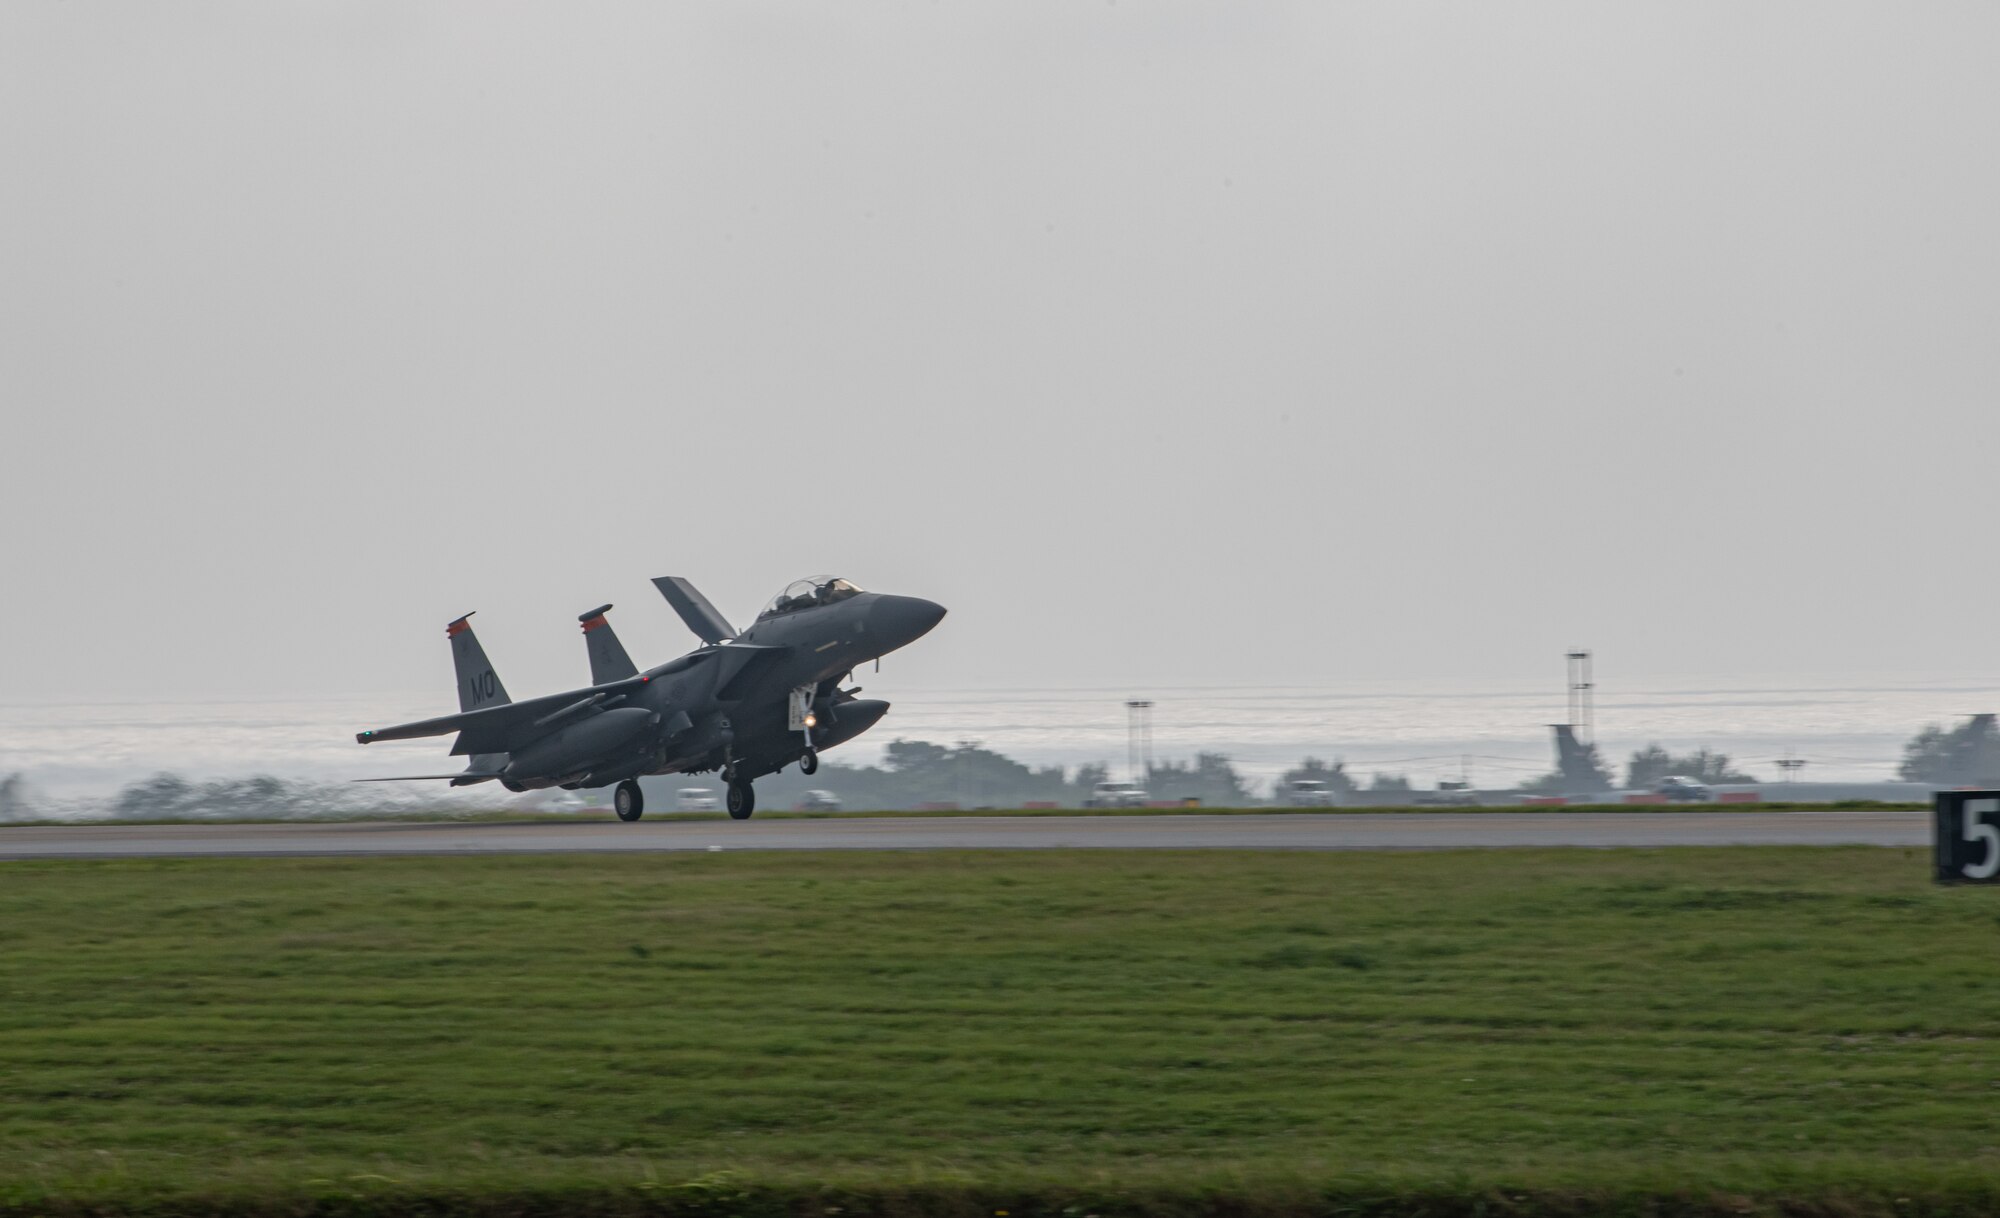 An F-15E lands on a runway.